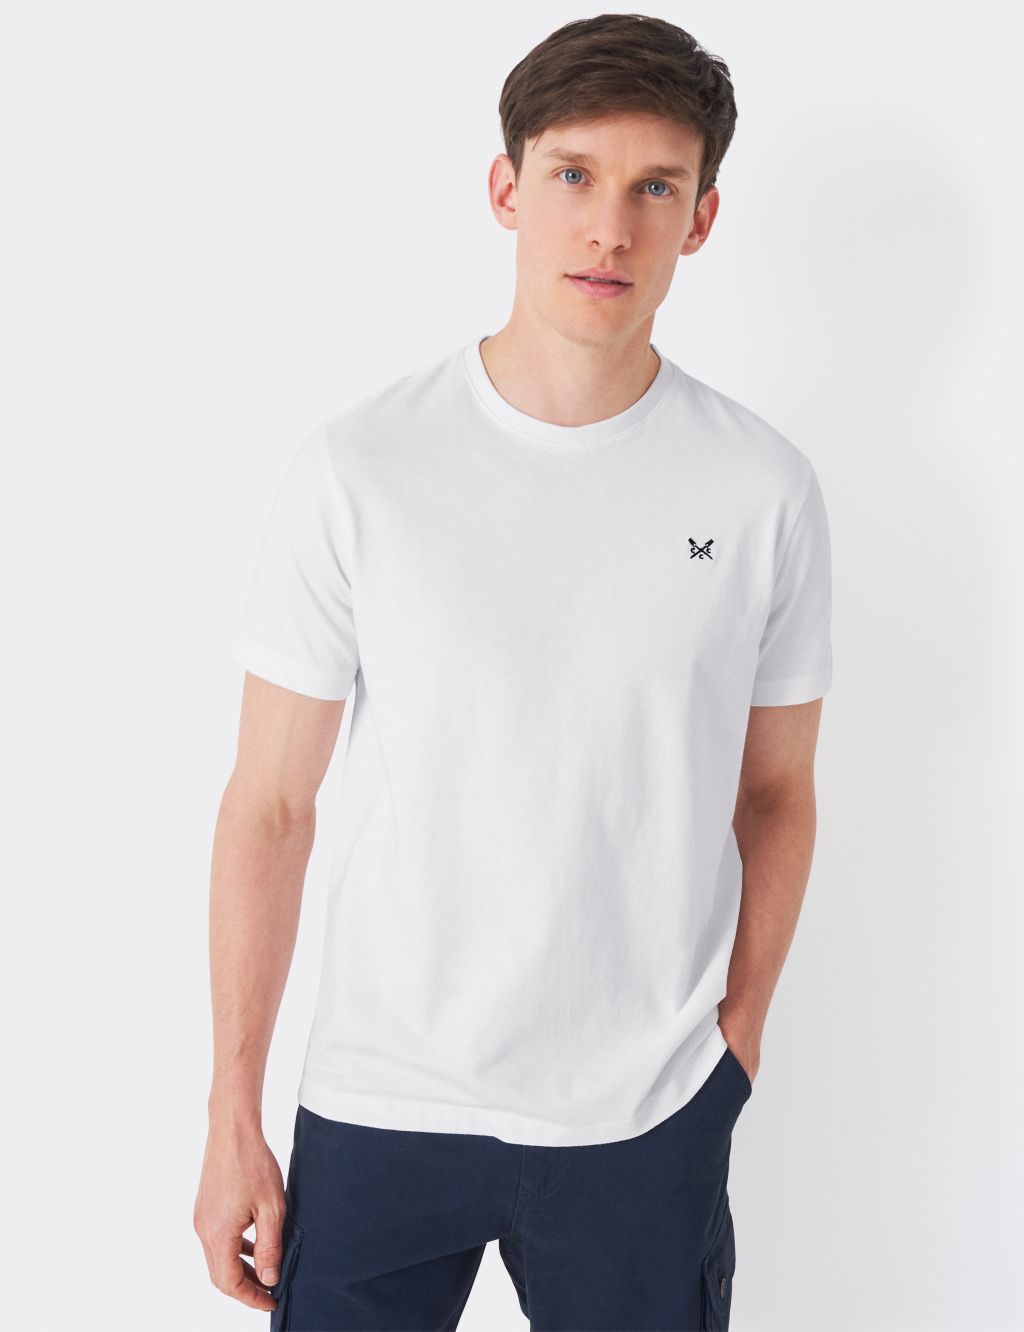 Men's White T-shirts | M&S